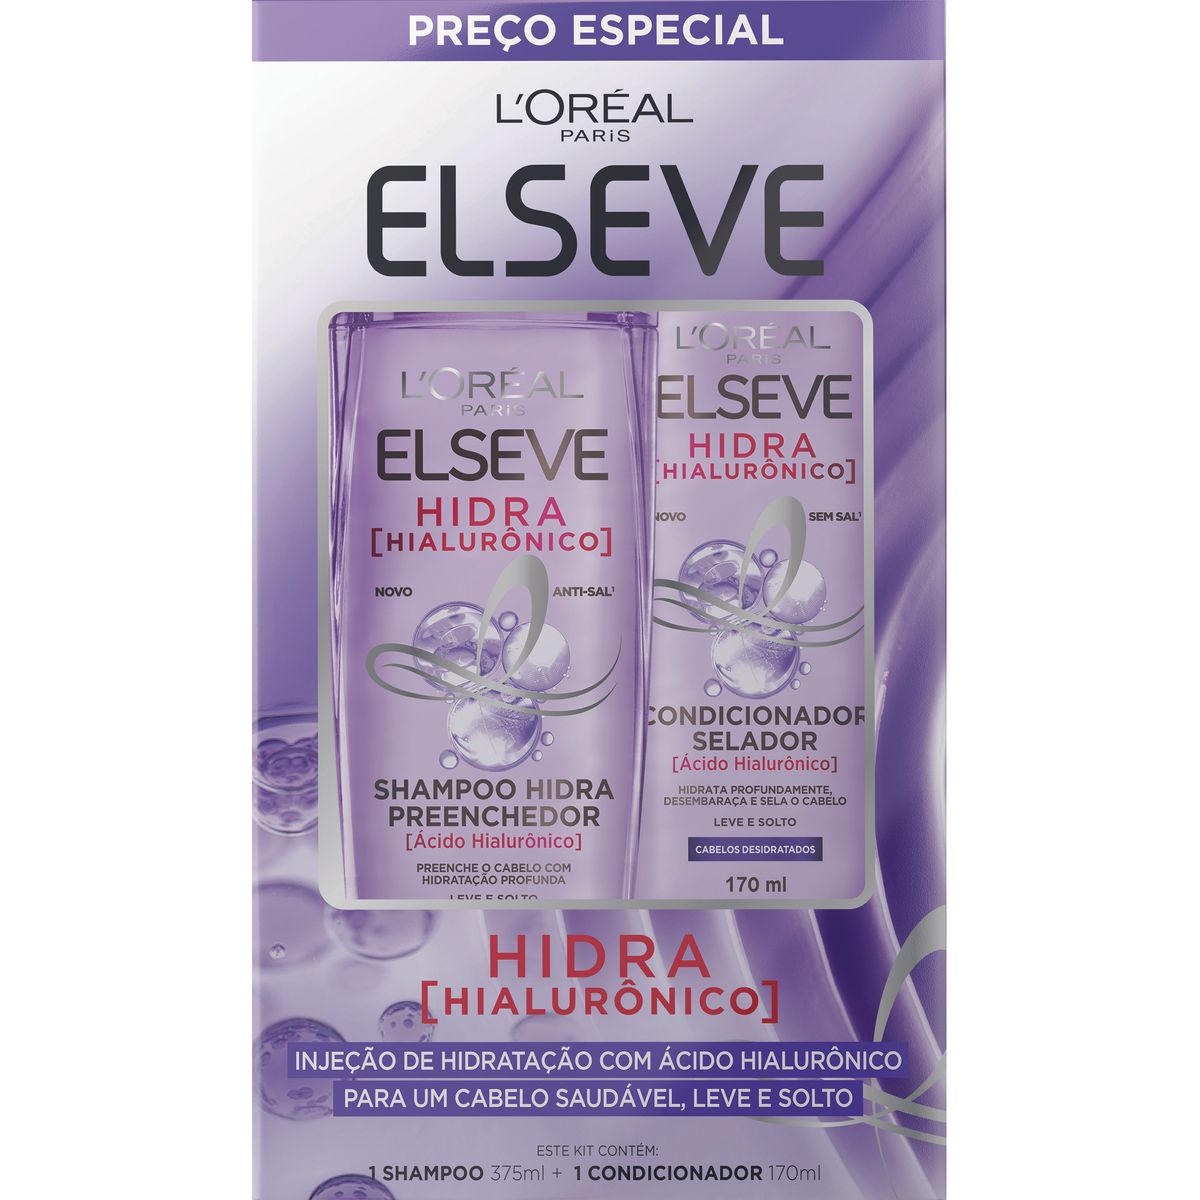 Shampoo + Condicionador Elseve Hidra Hialurônico Preço Especial